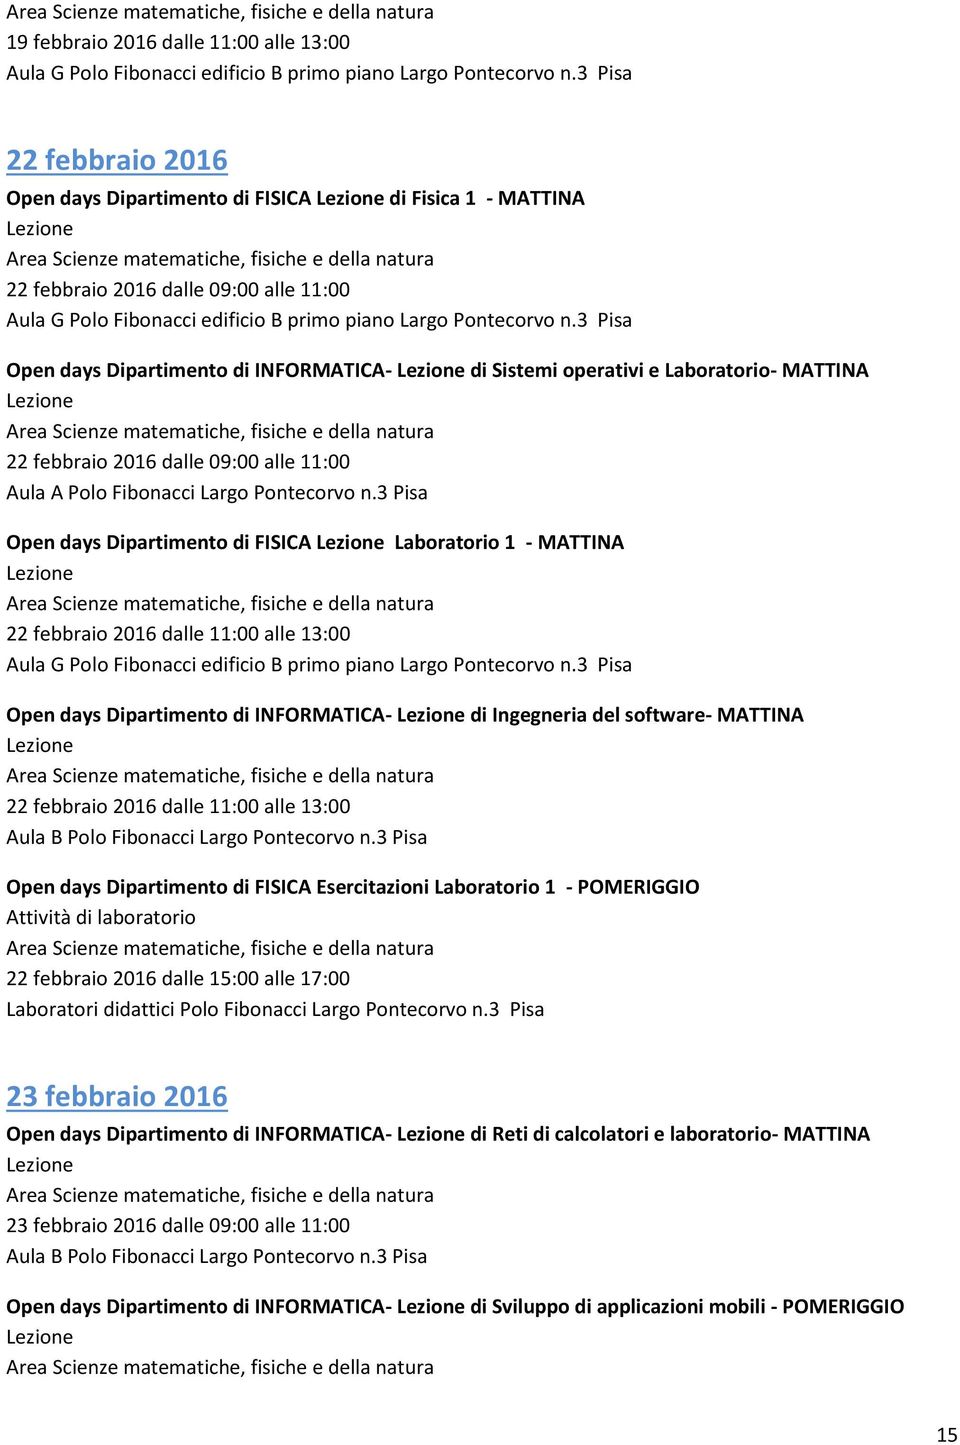 3 Pisa Open days Dipartimento di INFORMATICA- di Sistemi operativi e Laboratorio- MATTINA 22 febbraio 2016 dalle 09:00 alle 11:00 Aula A Polo Fibonacci Largo Pontecorvo n.